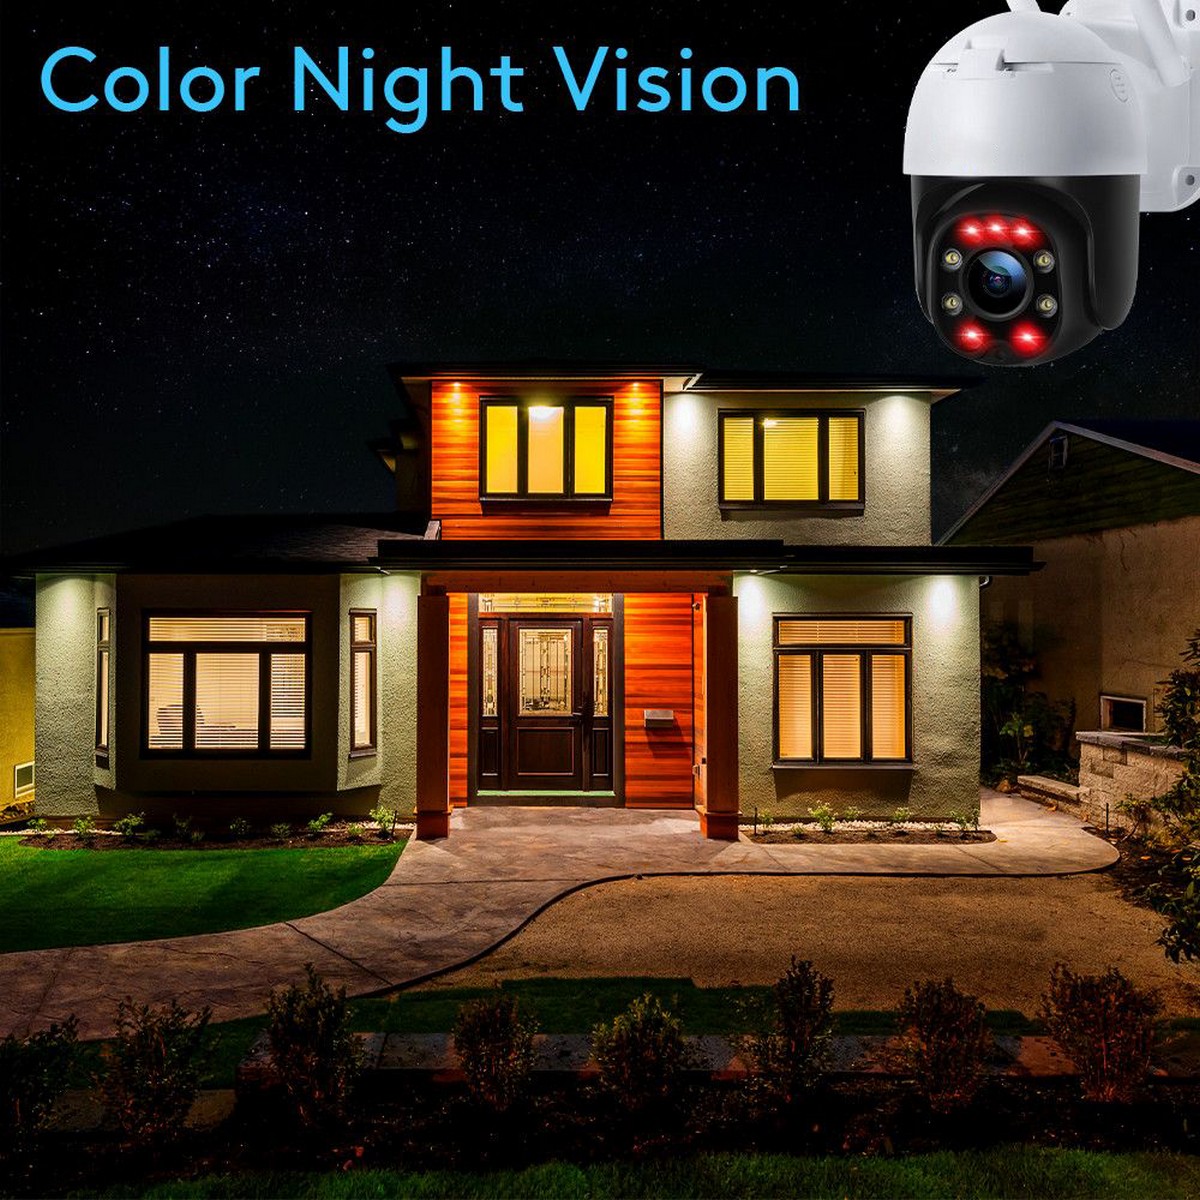 câmera de segurança ip de visão noturna - leds infravermelhos coloridos